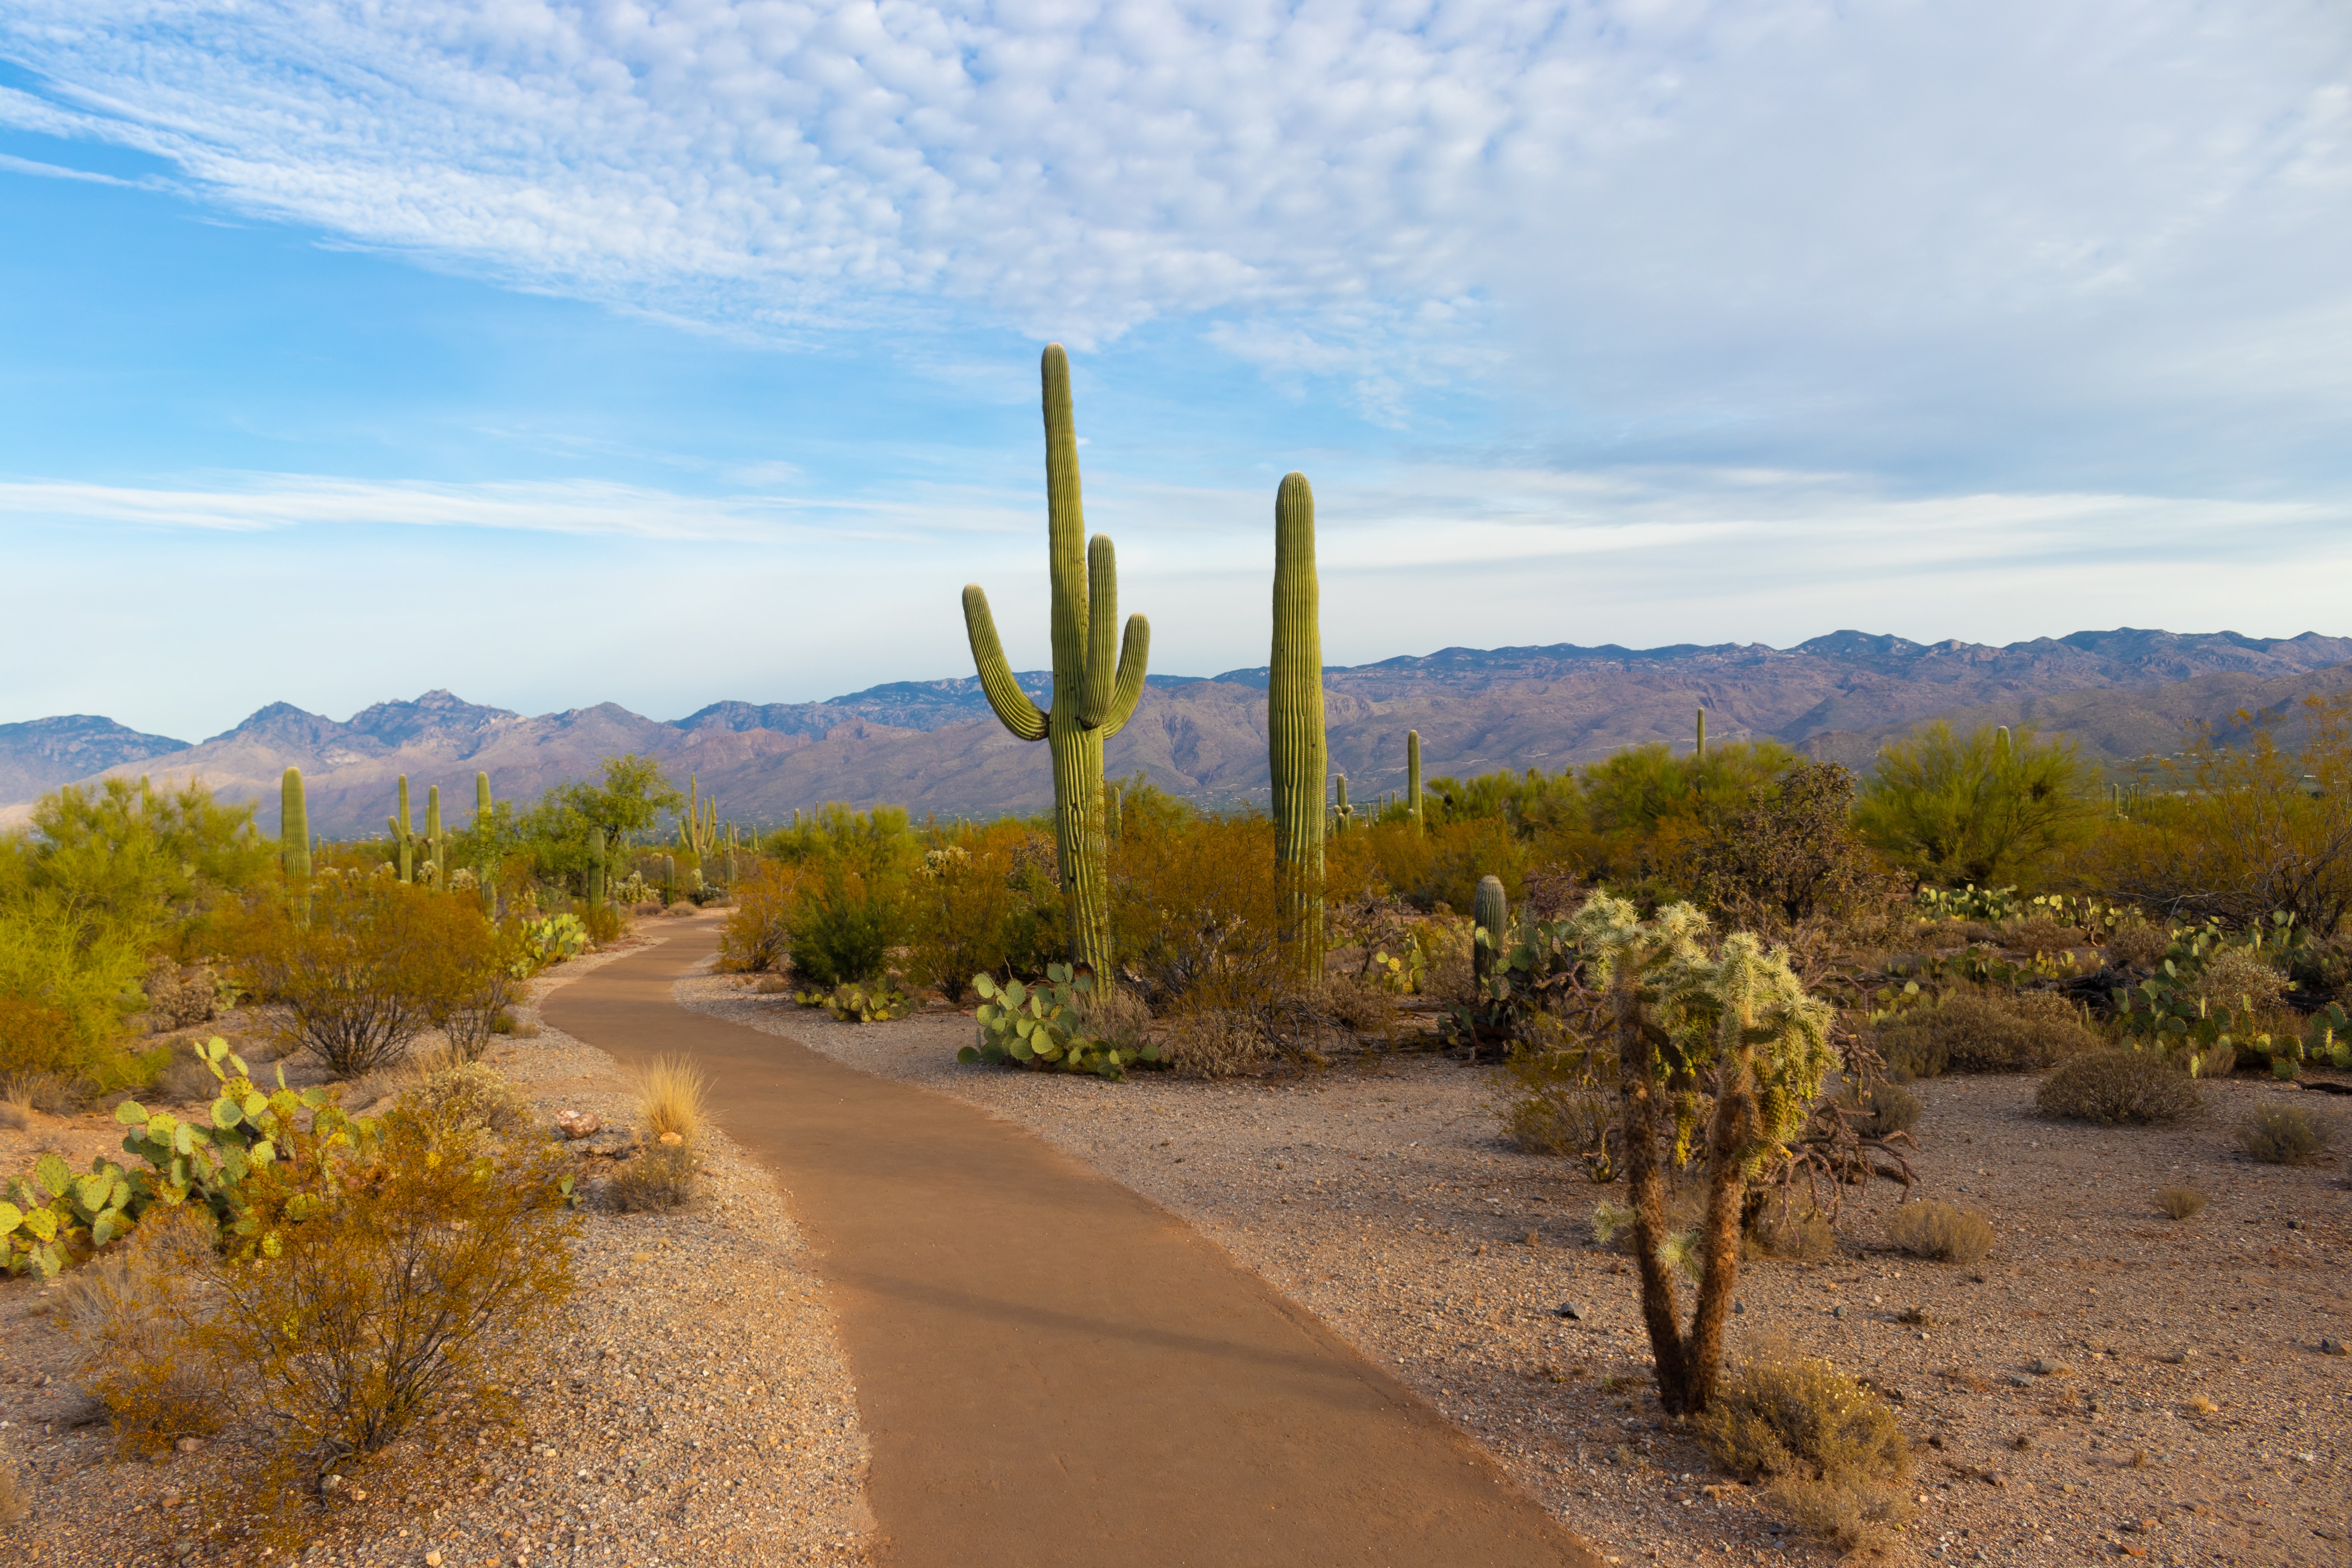 Daytime desert with Saguaro cactus, brush and pathway